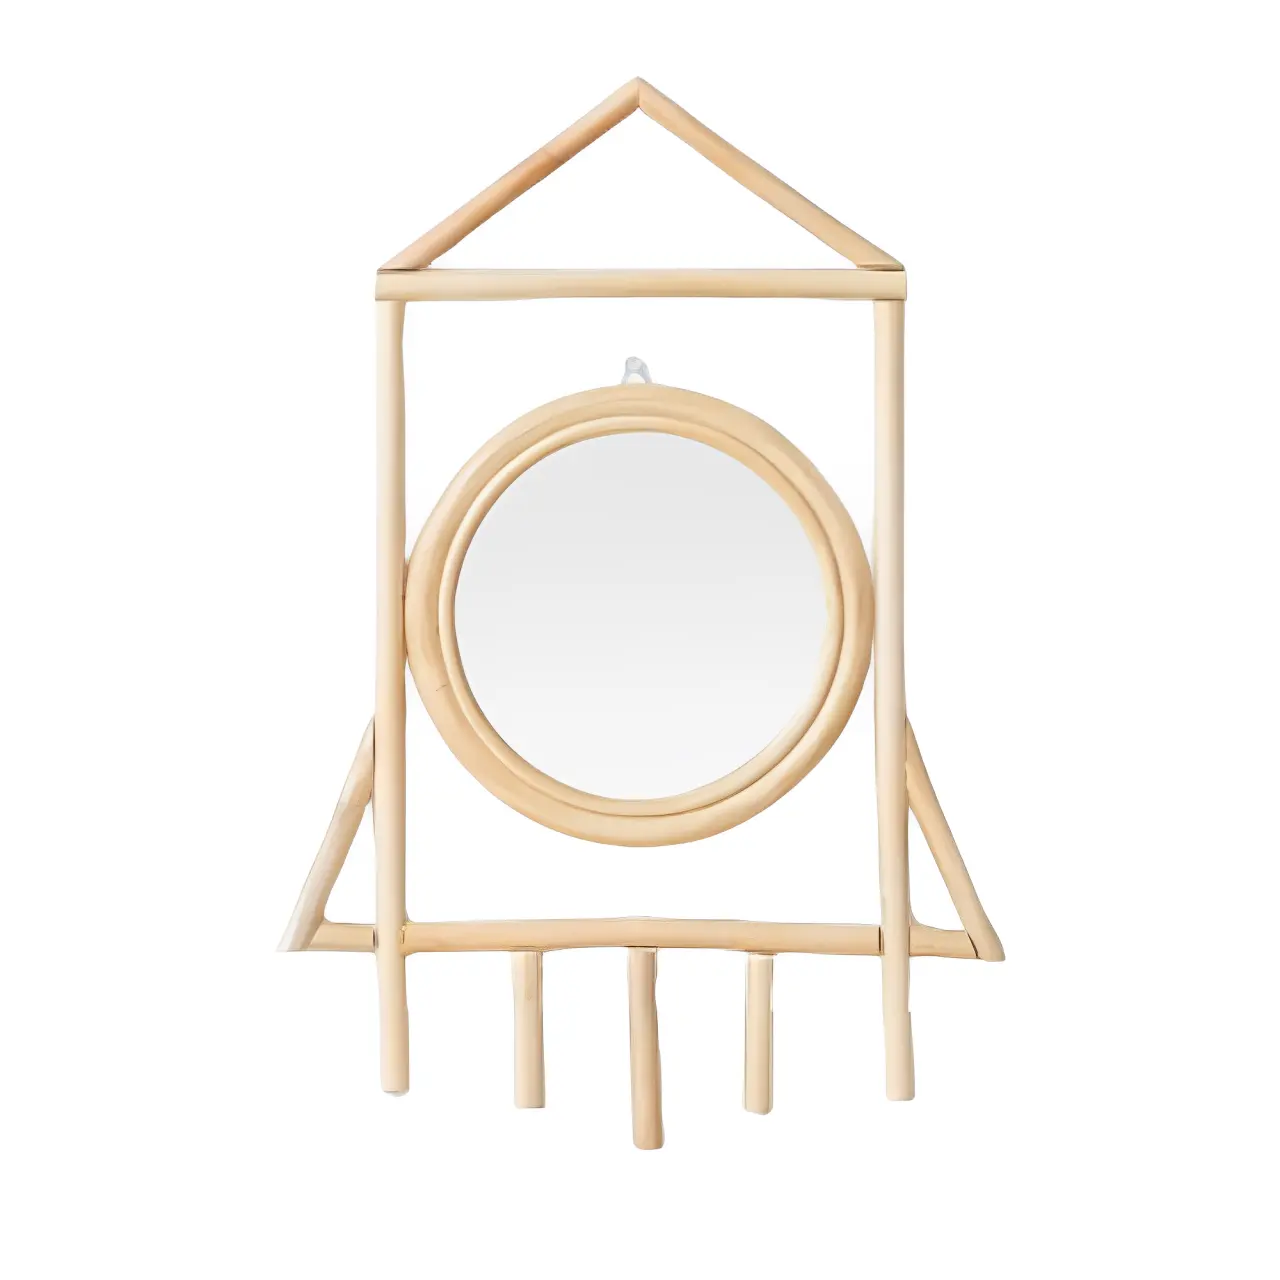 Specchio in rattan unico per i bambini a forma di un razzo design lussuoso per la decorazione della stanza o souvenir